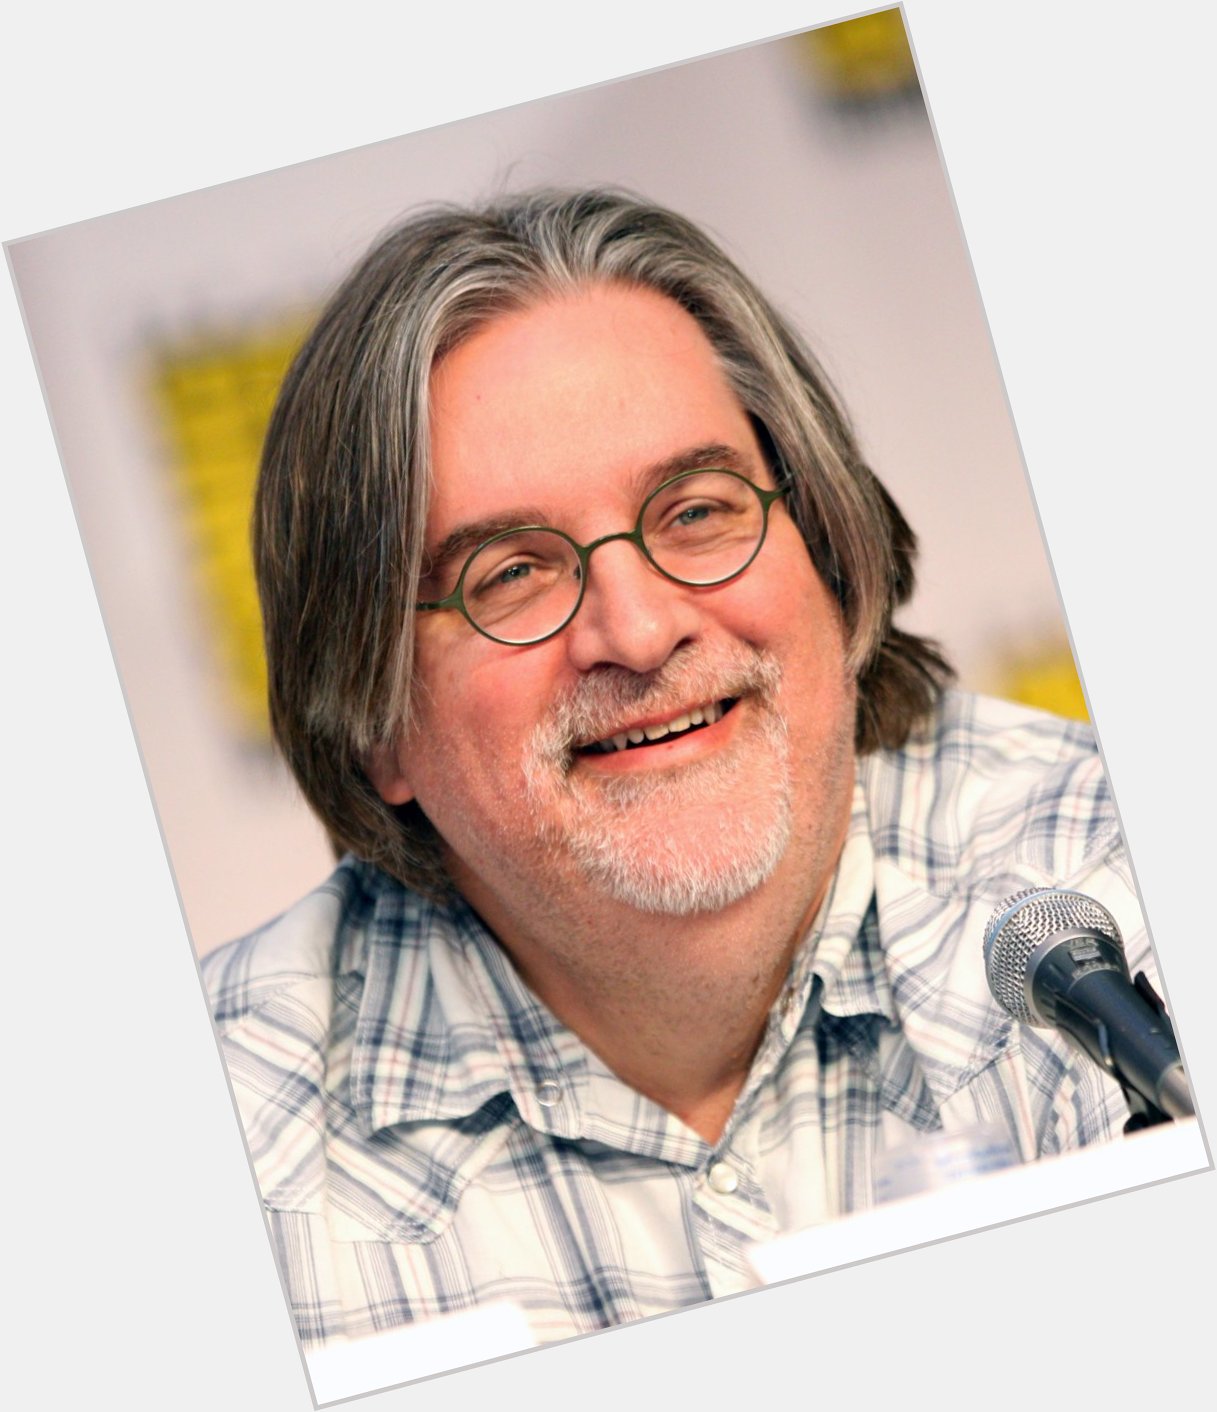 Happy Birthday Matt Groening (Creator of The Simpsons and Futurama) 